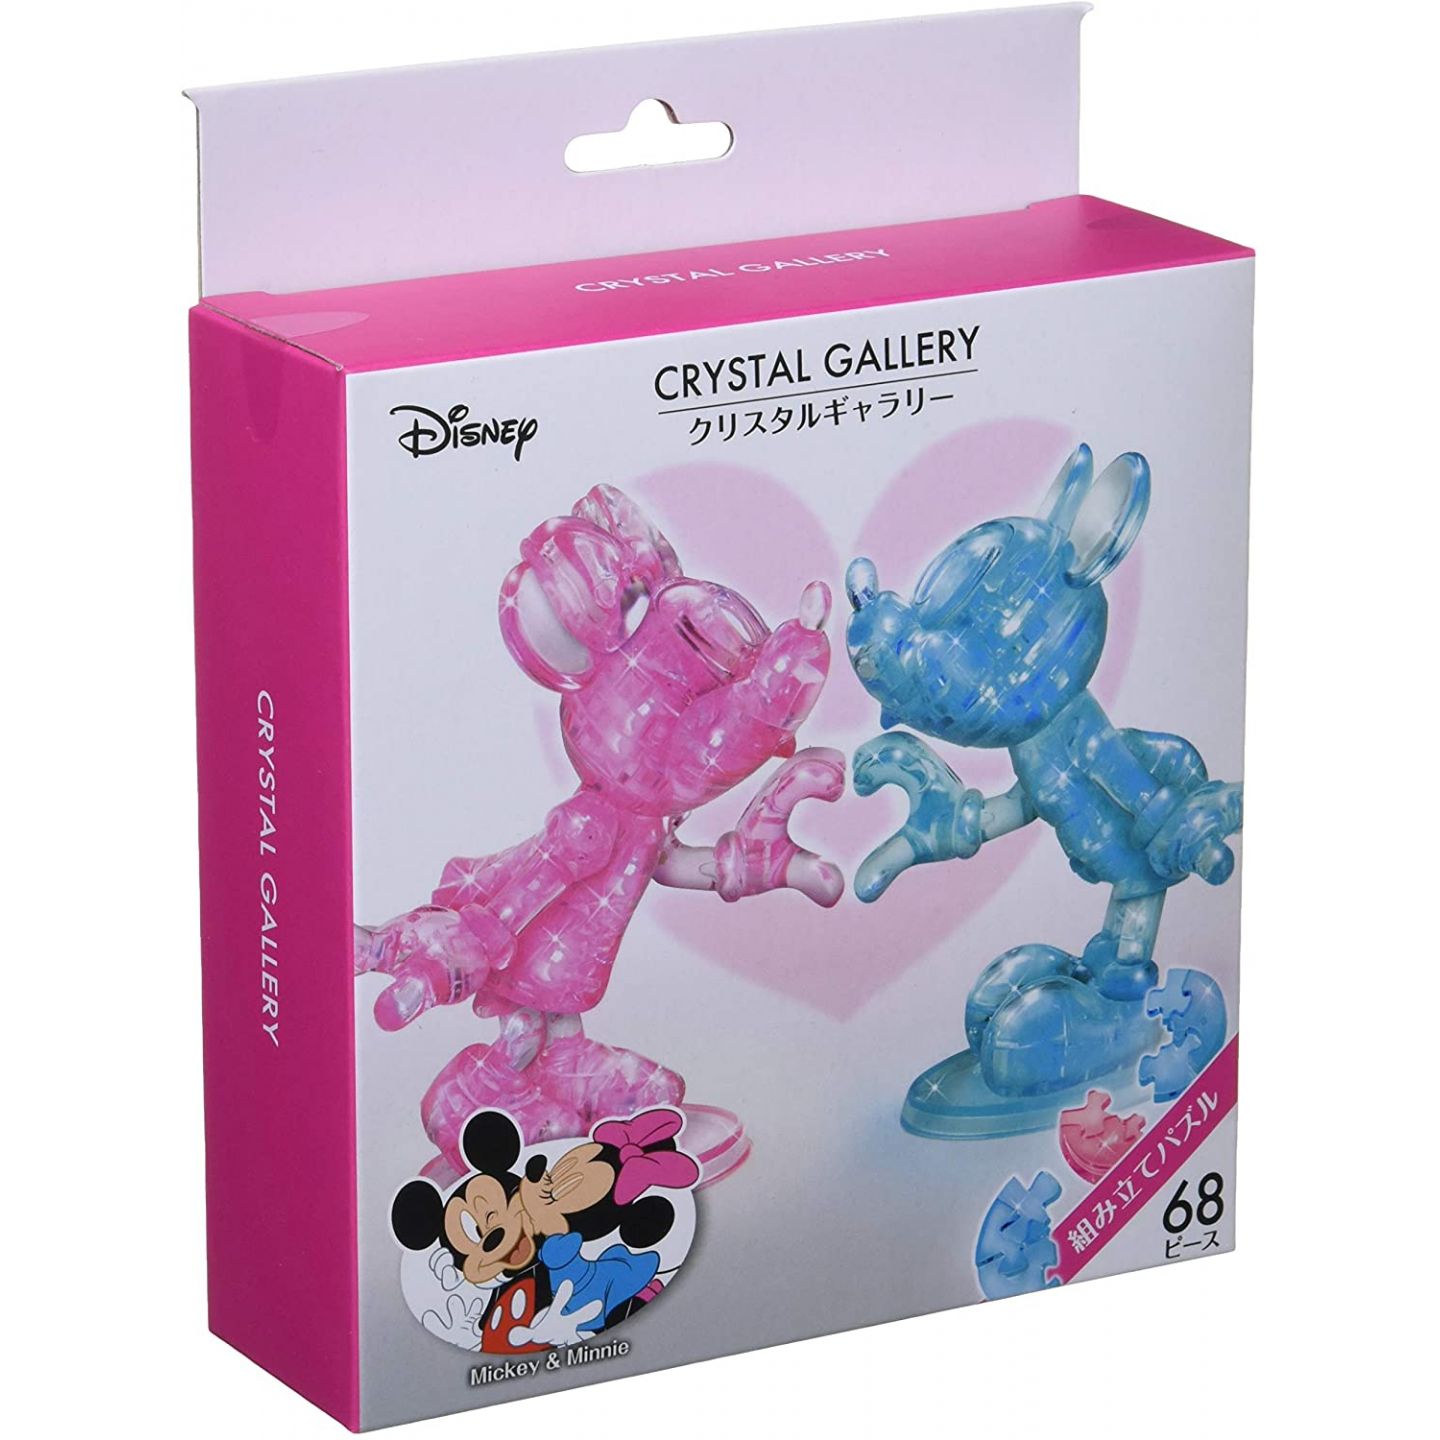 Hanayama 41 Pieces Crystal Gallery Disney TsumTsum Mickey & Minnie 3D Puzzle 